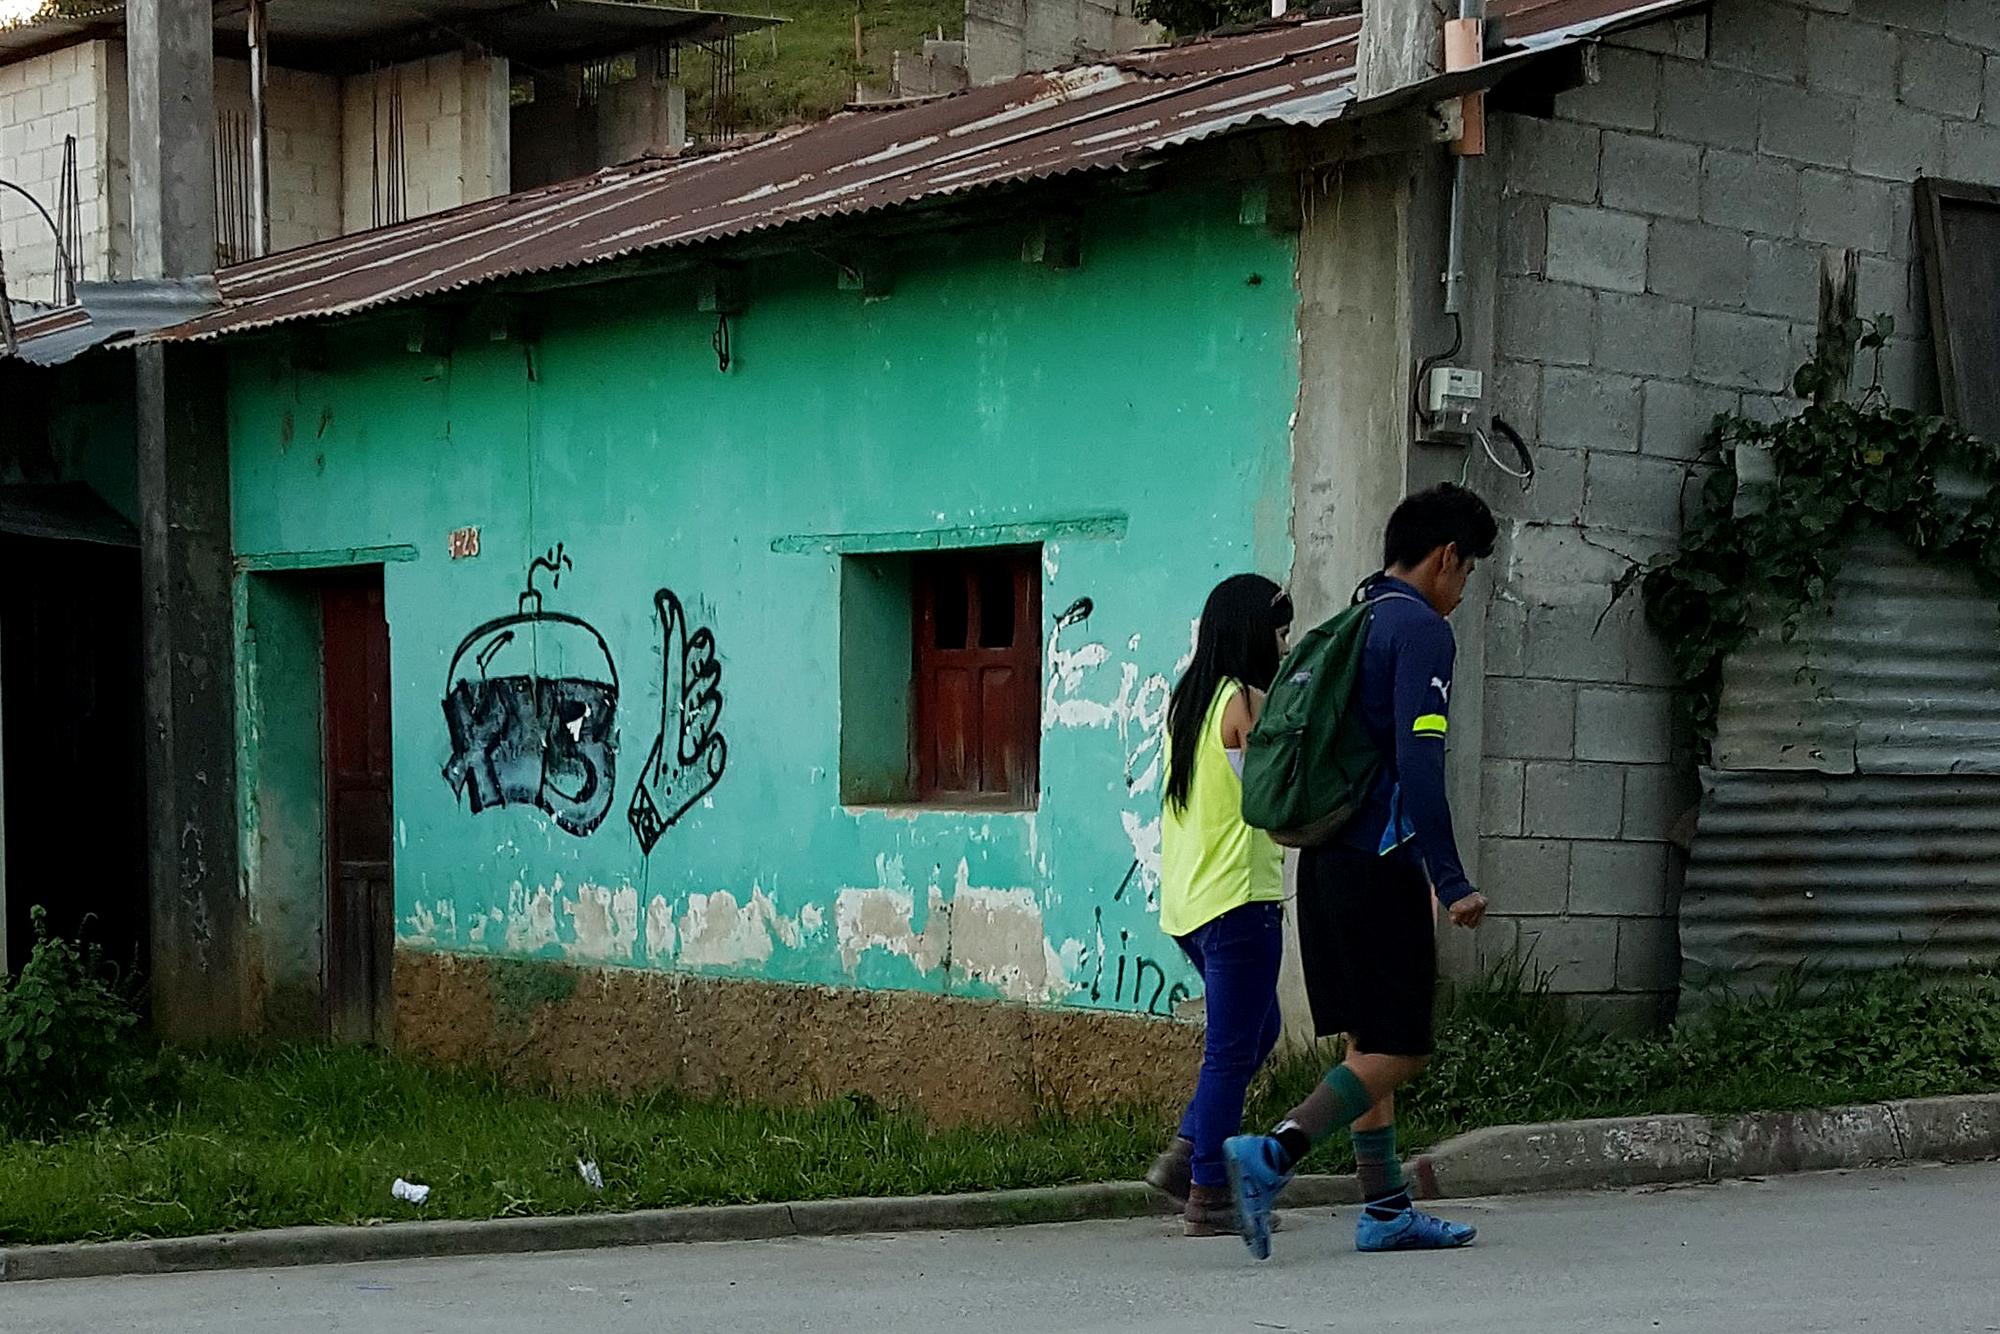 Placazos  alusivos a la pandilla 18 pintados en los alrededores del estadio municipal de Chichicastenango. Son frescos, lo que indica algún tipo de actividad de esta pandilla en la ciudad. Foto Roberto Valencia (El Faro).